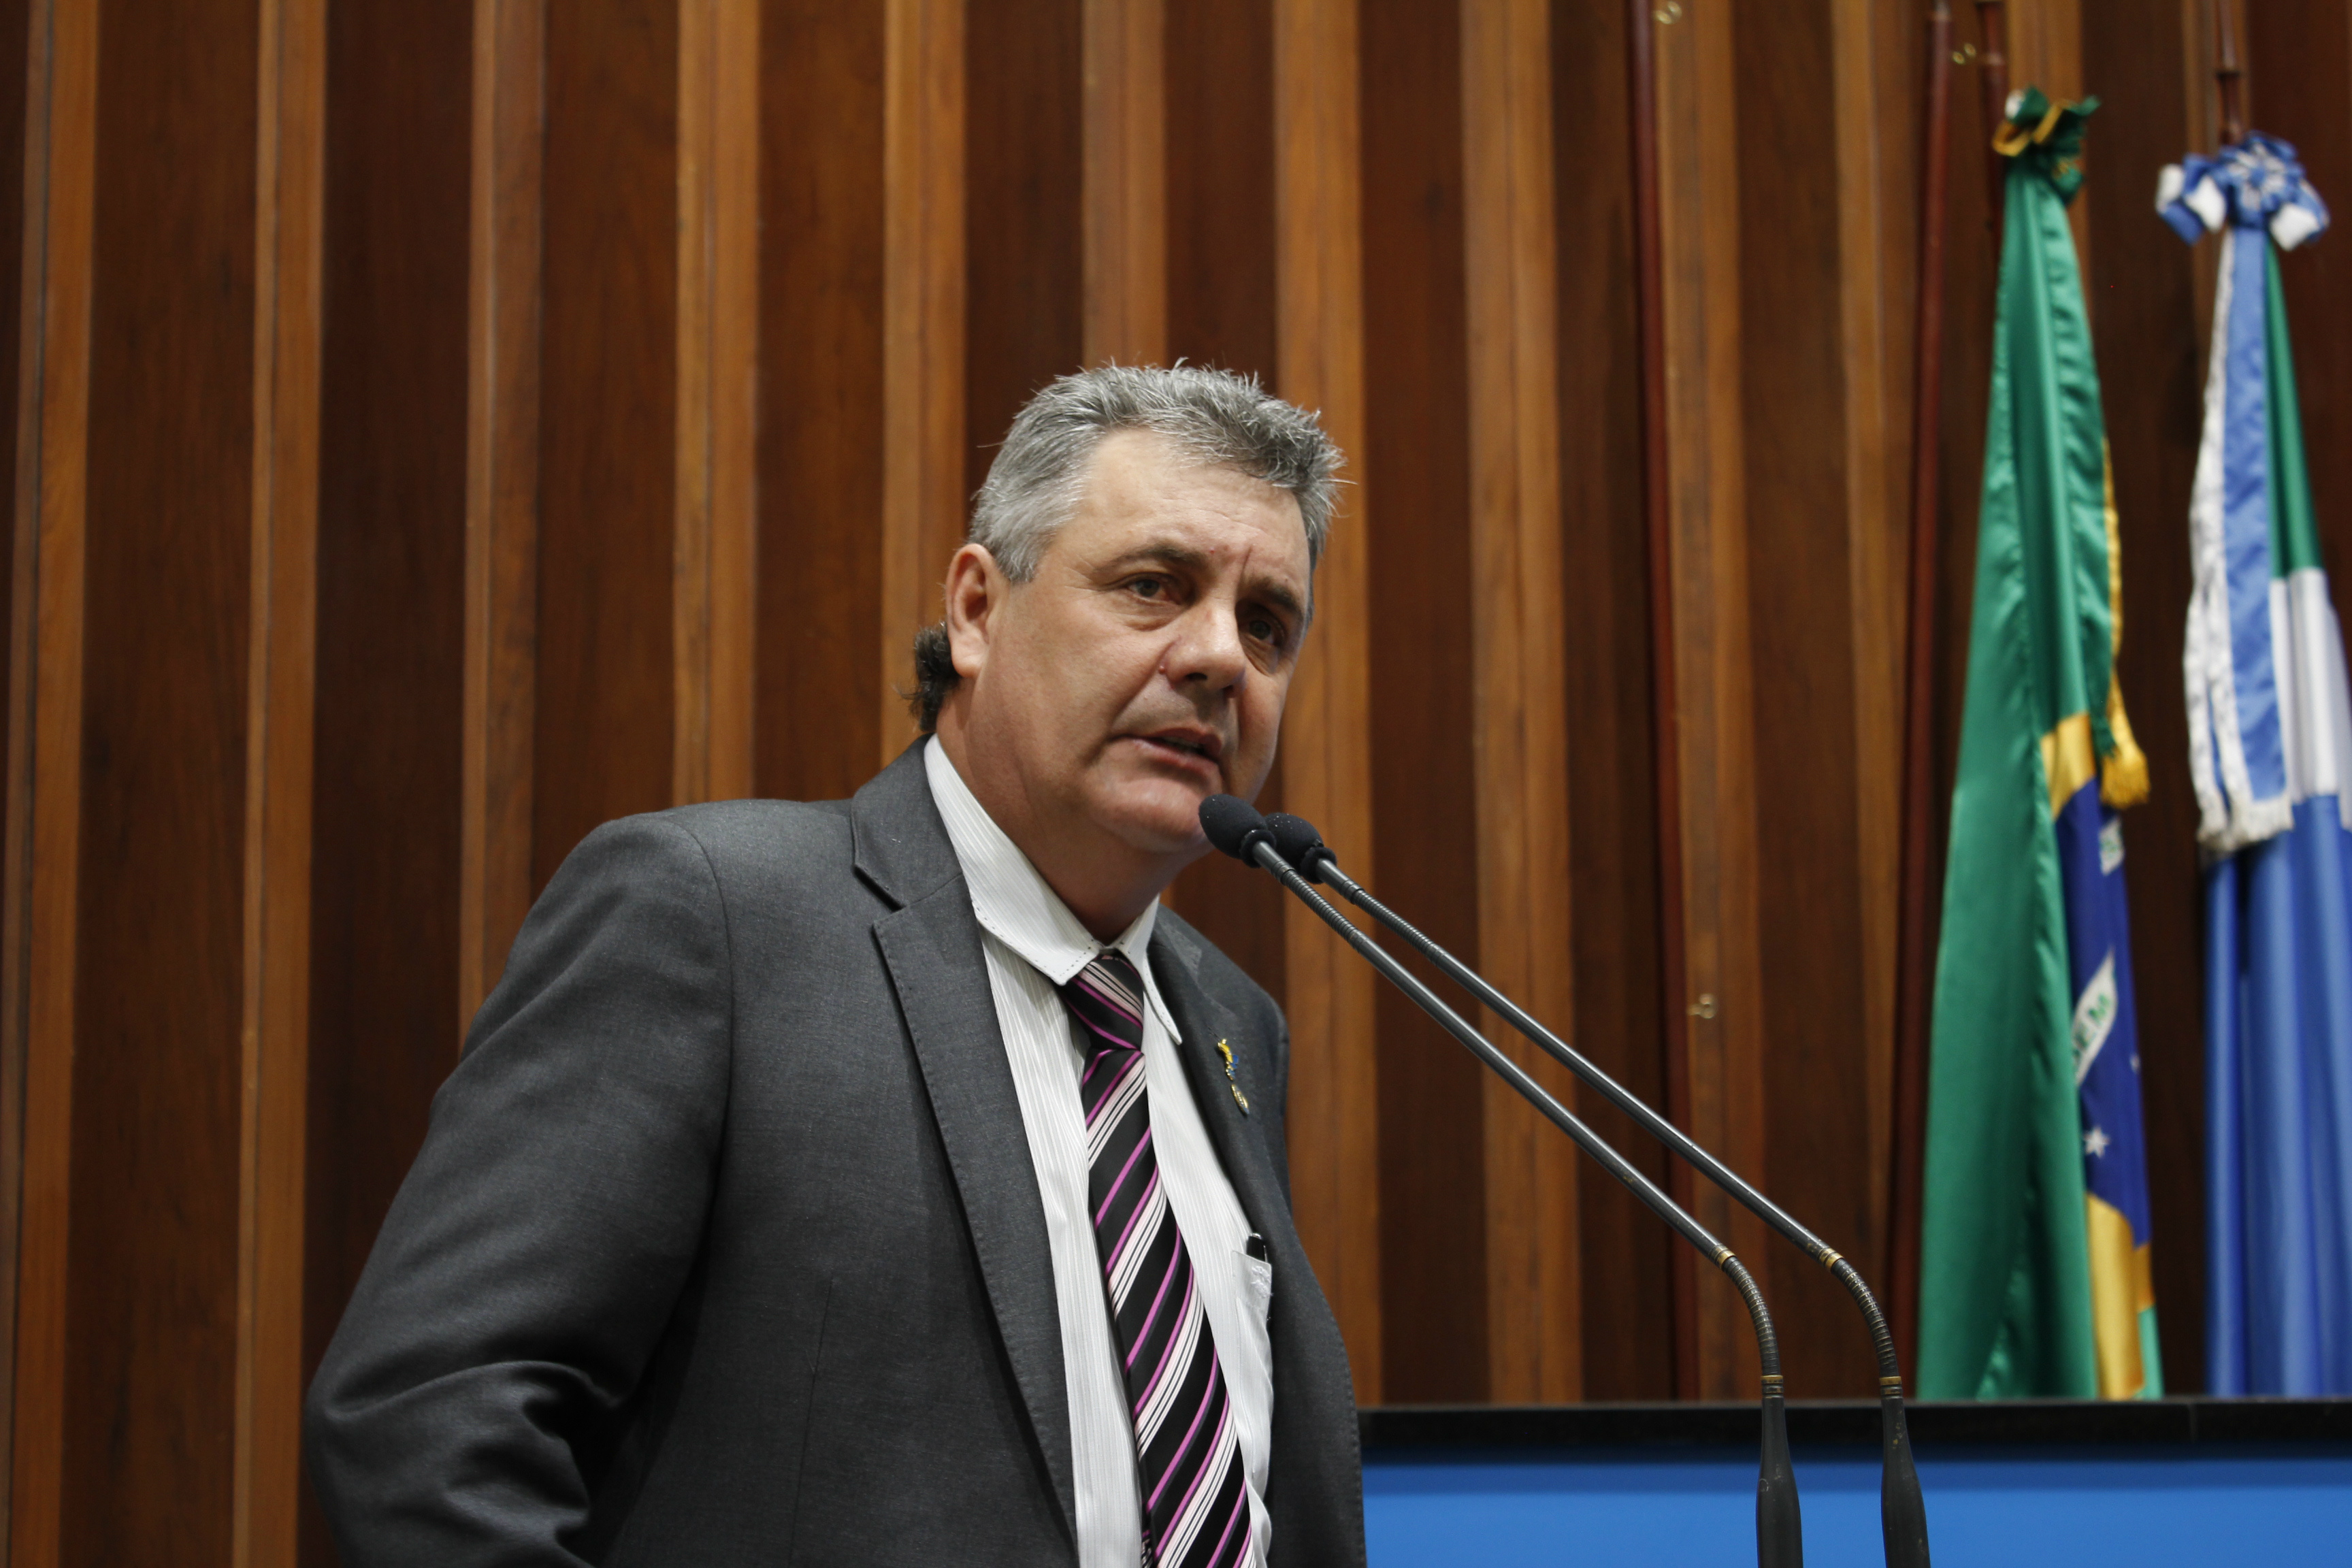 A solicitação do deputado estadual Angelo Guerreiro foi encaminhada à mesa diretora na sessão plenária desta terça-feira. (Foto: Assessoria)